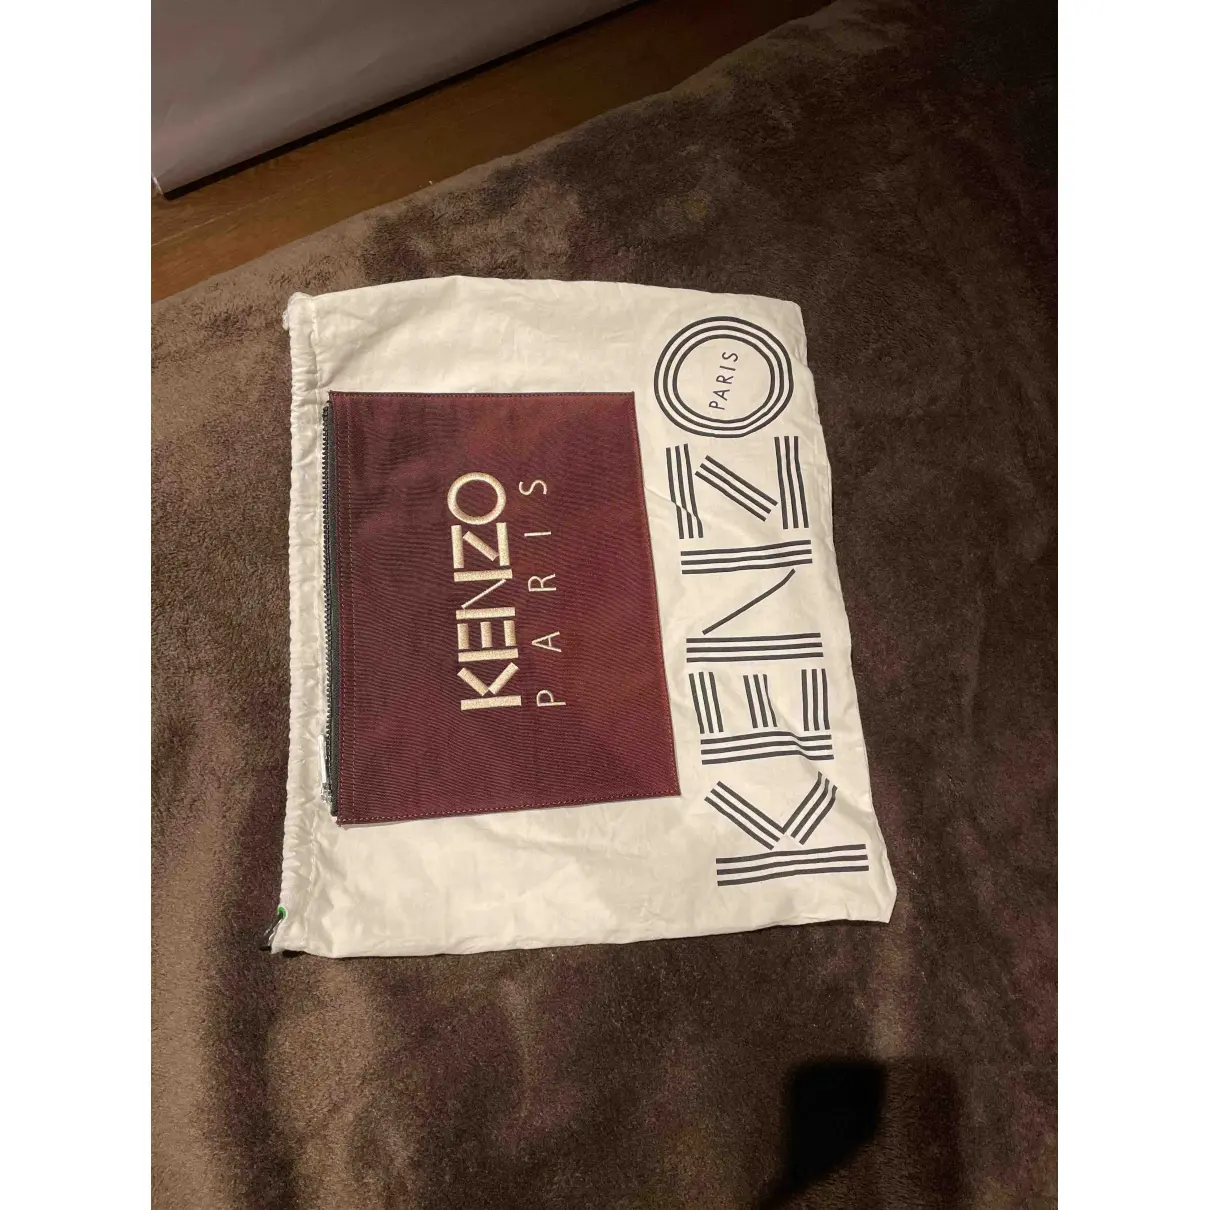 Buy Kenzo Tiger clutch bag online